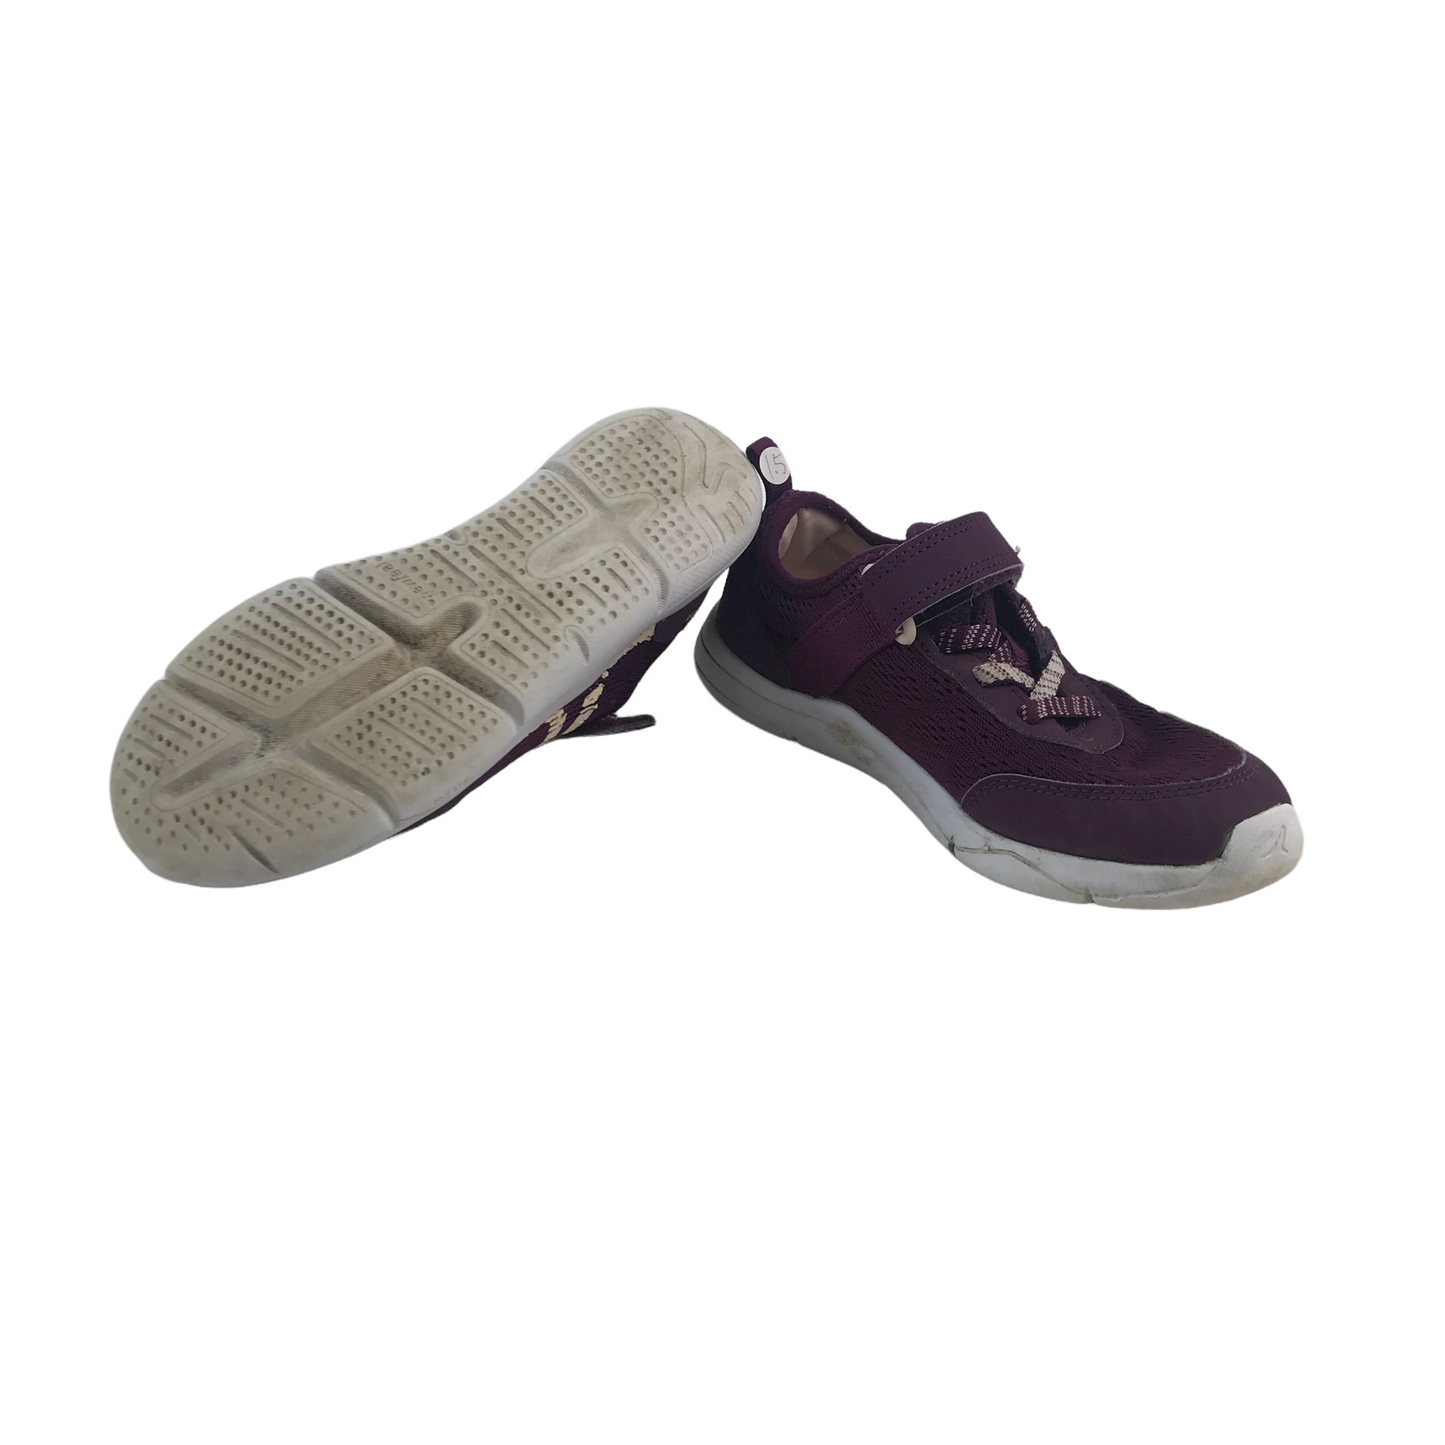 Newfeel Purple Trainers Shoe Size 1.5